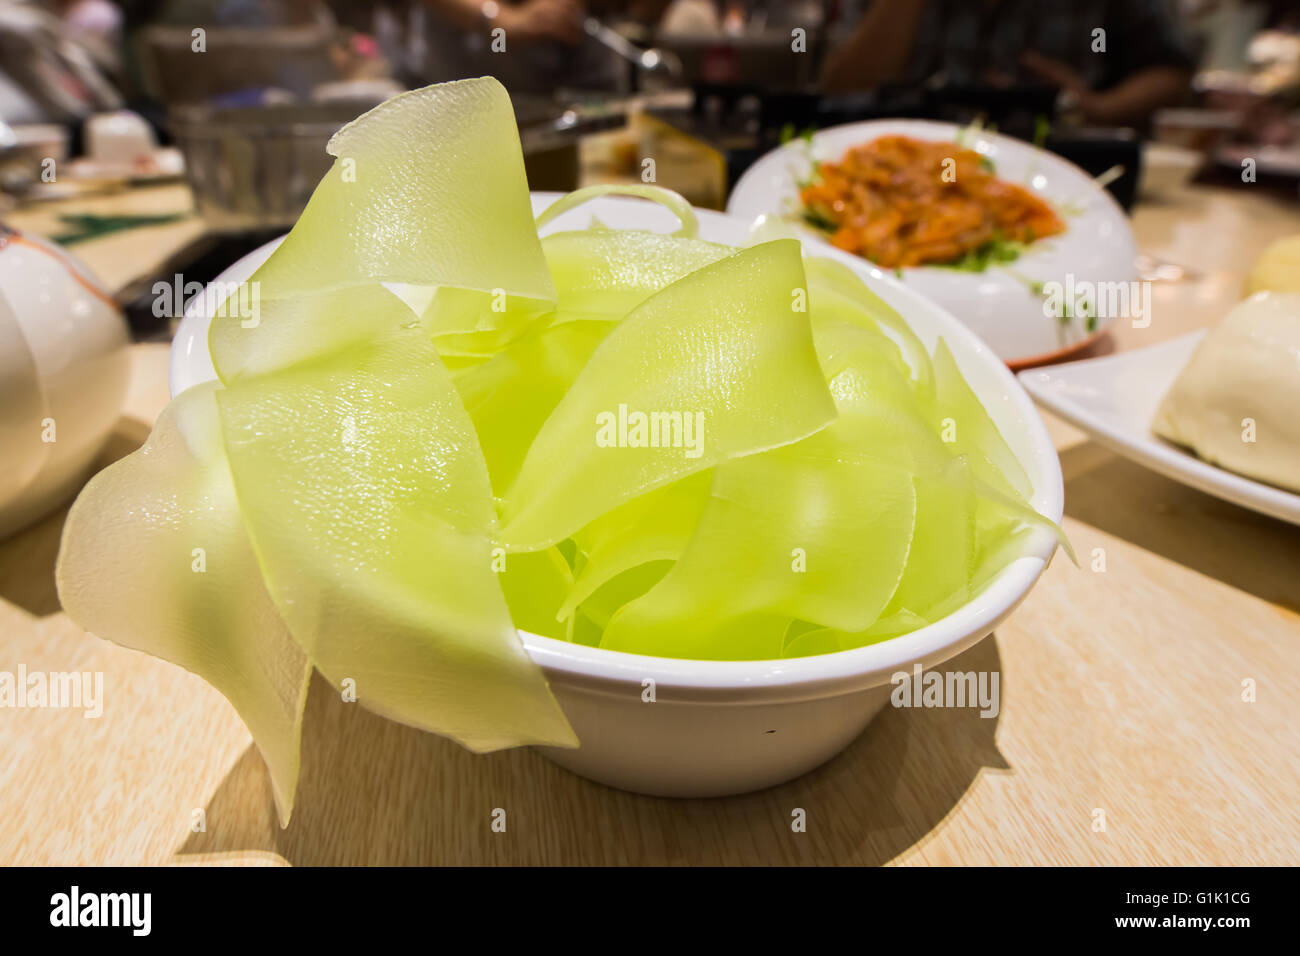 Celtuce auch bekannt als Sellerie Salat ein Gemüse aus China Stockfoto